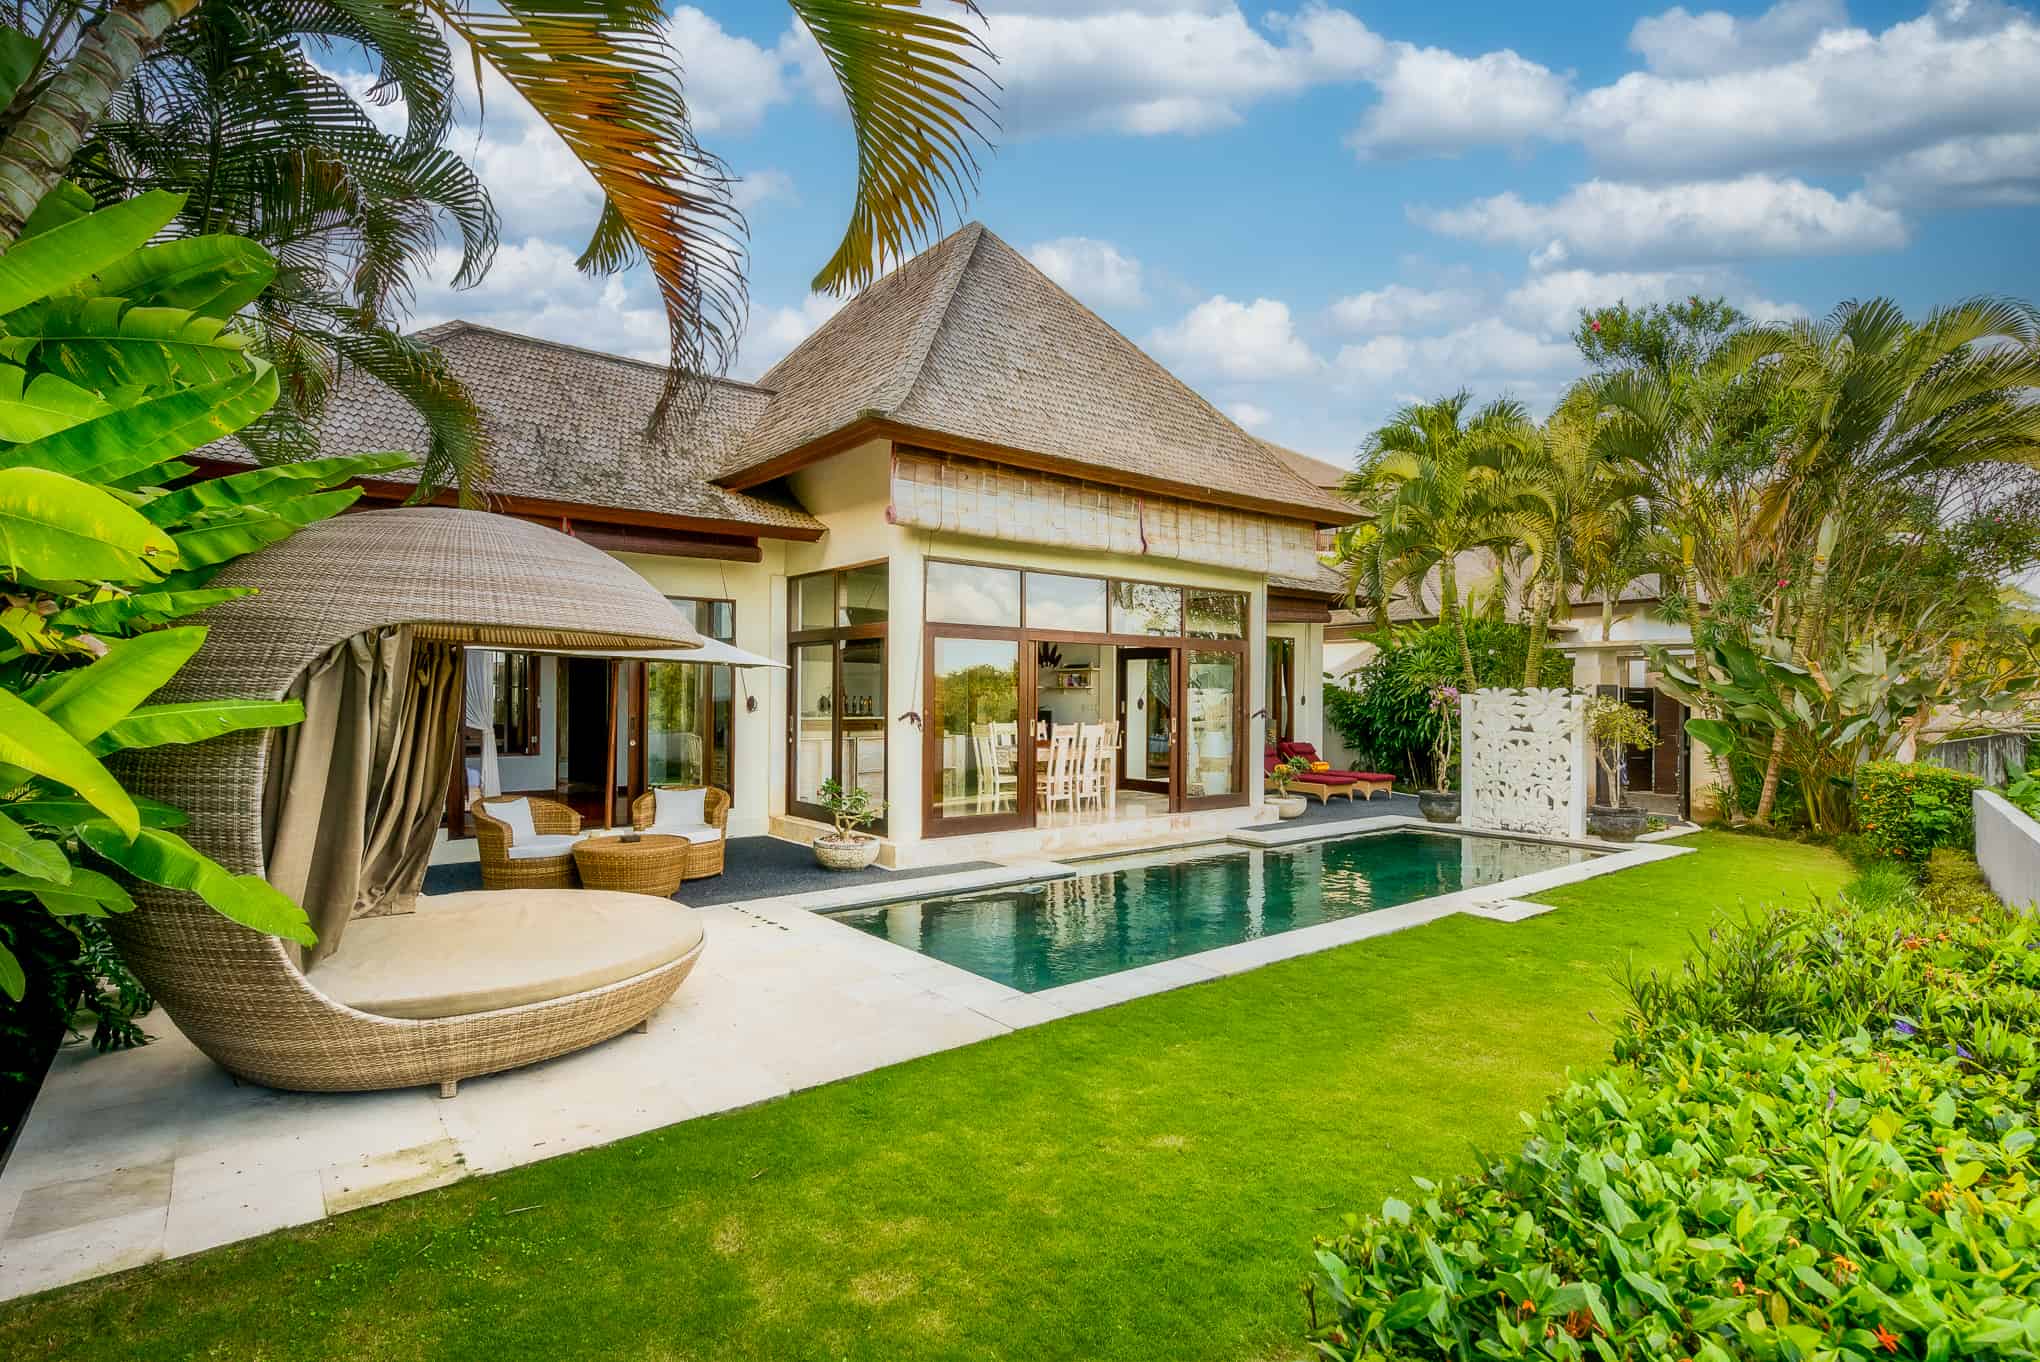 Villa Sahaja3 - Bali Vacation Homes